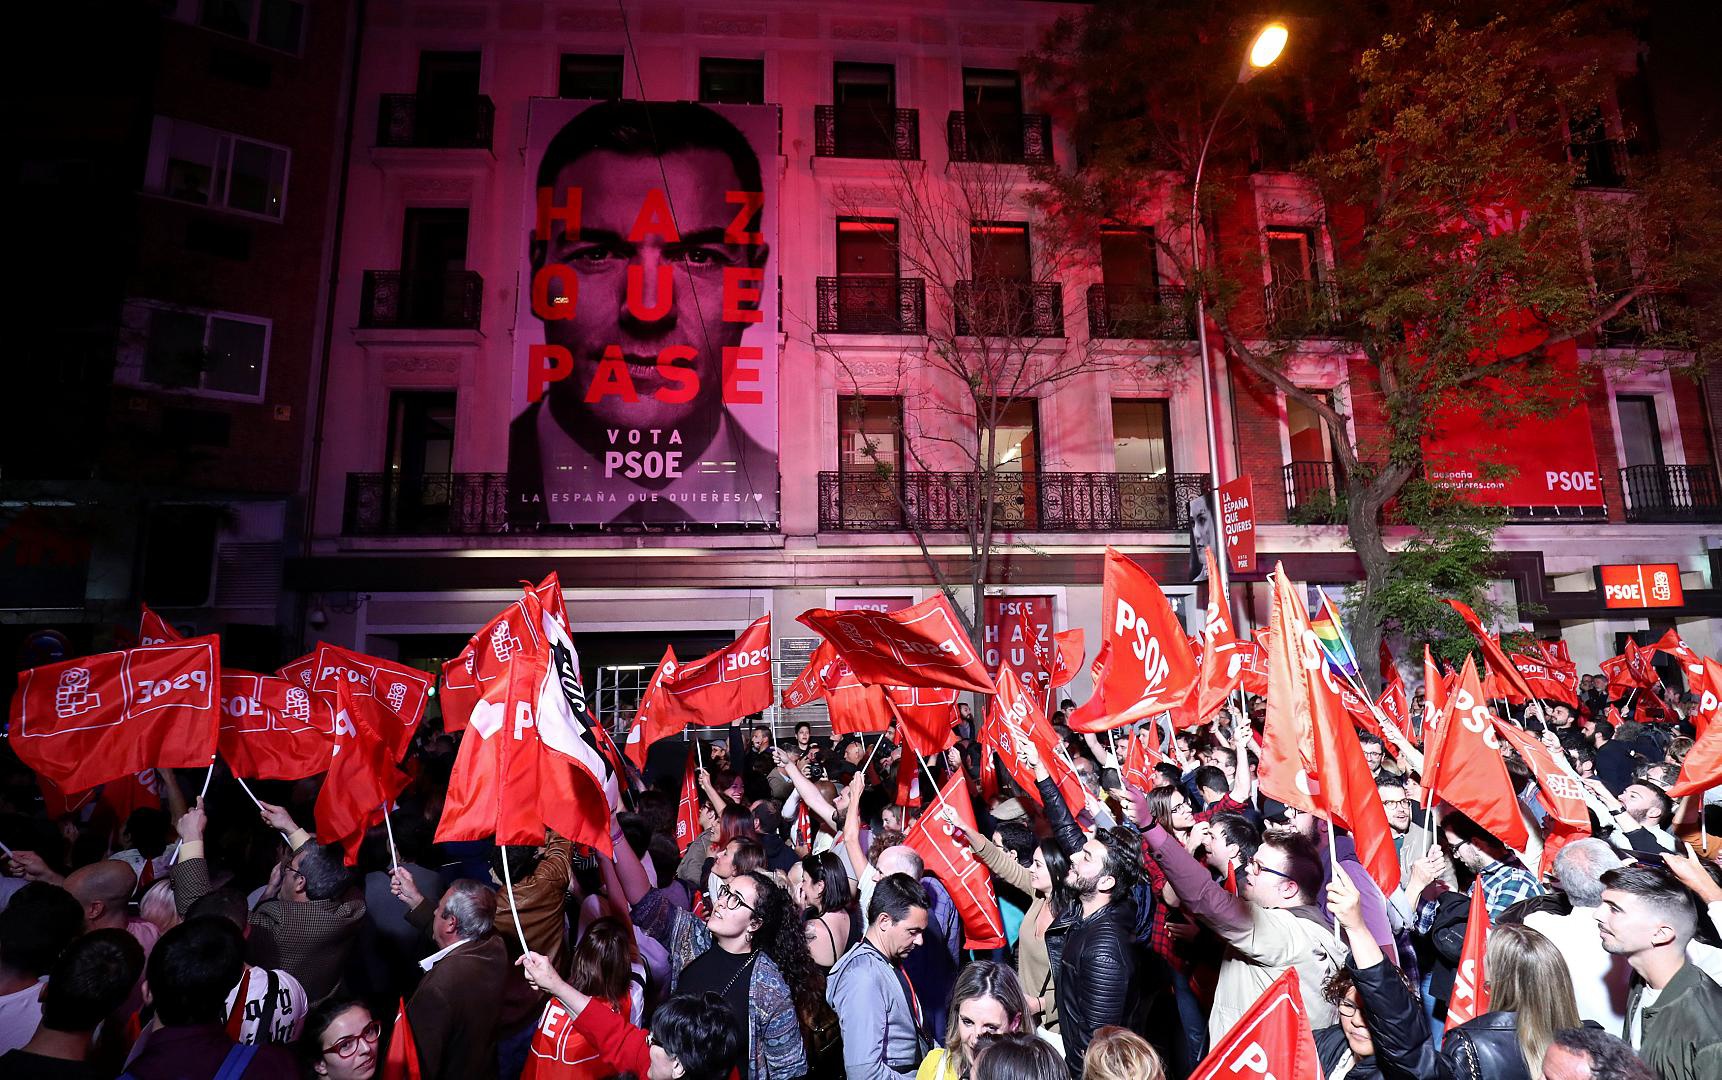 Сторонники социалистической рабочей партии празднуют победу на улицах Мадрида, апрель 2019.